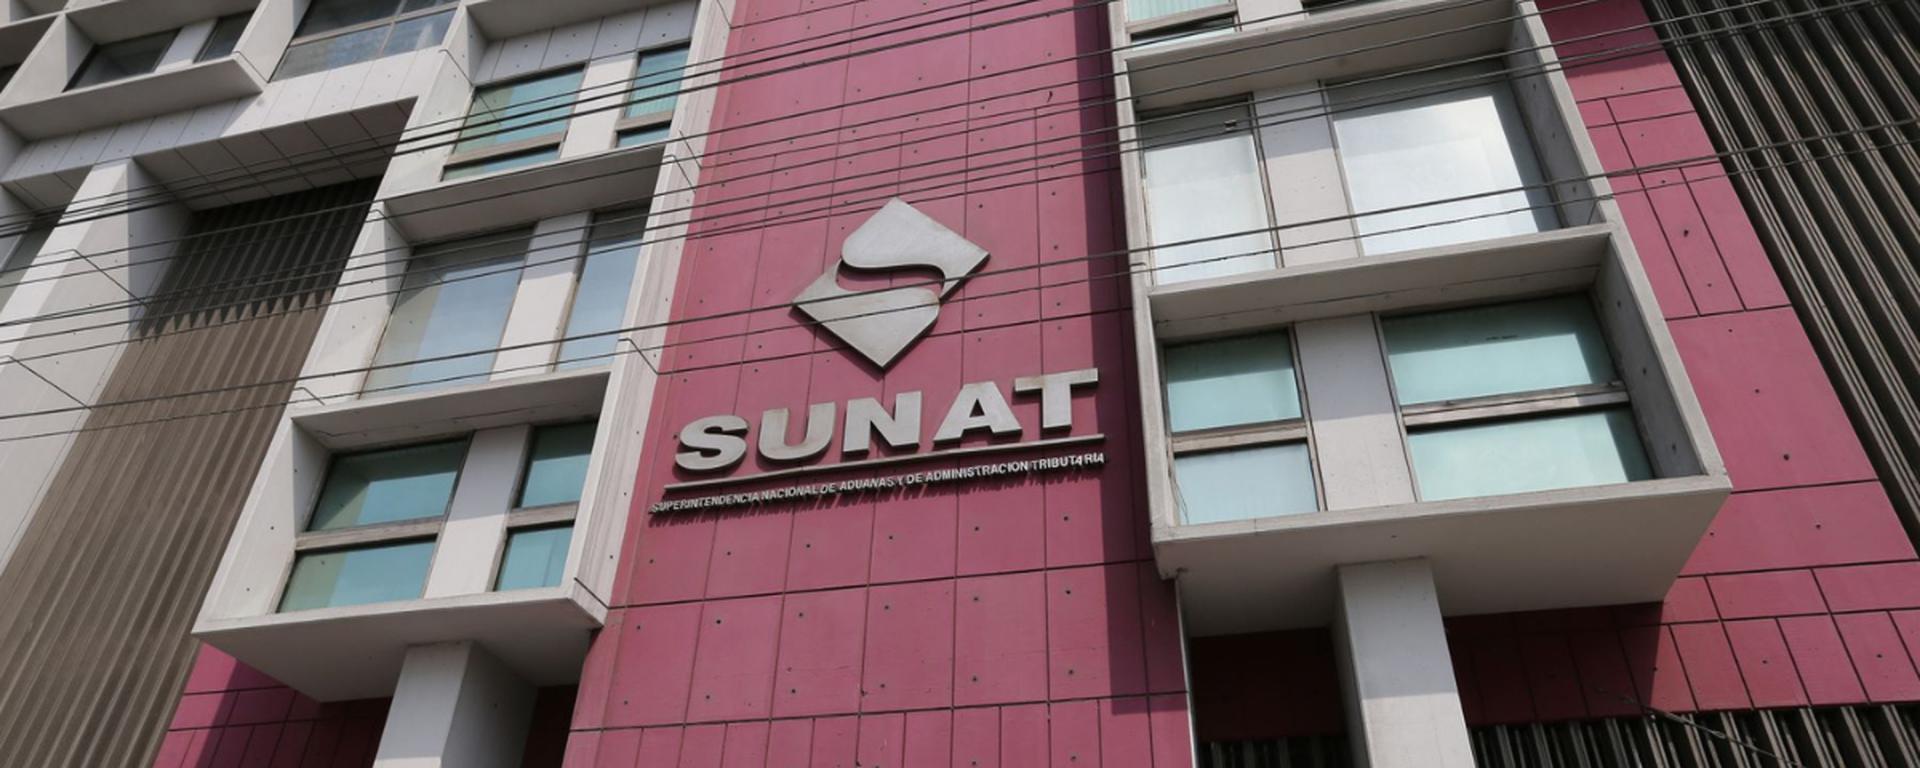 La Sunat tuvo 552 demandas por temas tributarios ante el Tribunal Constitucional en los últimos 11 años, según estudio